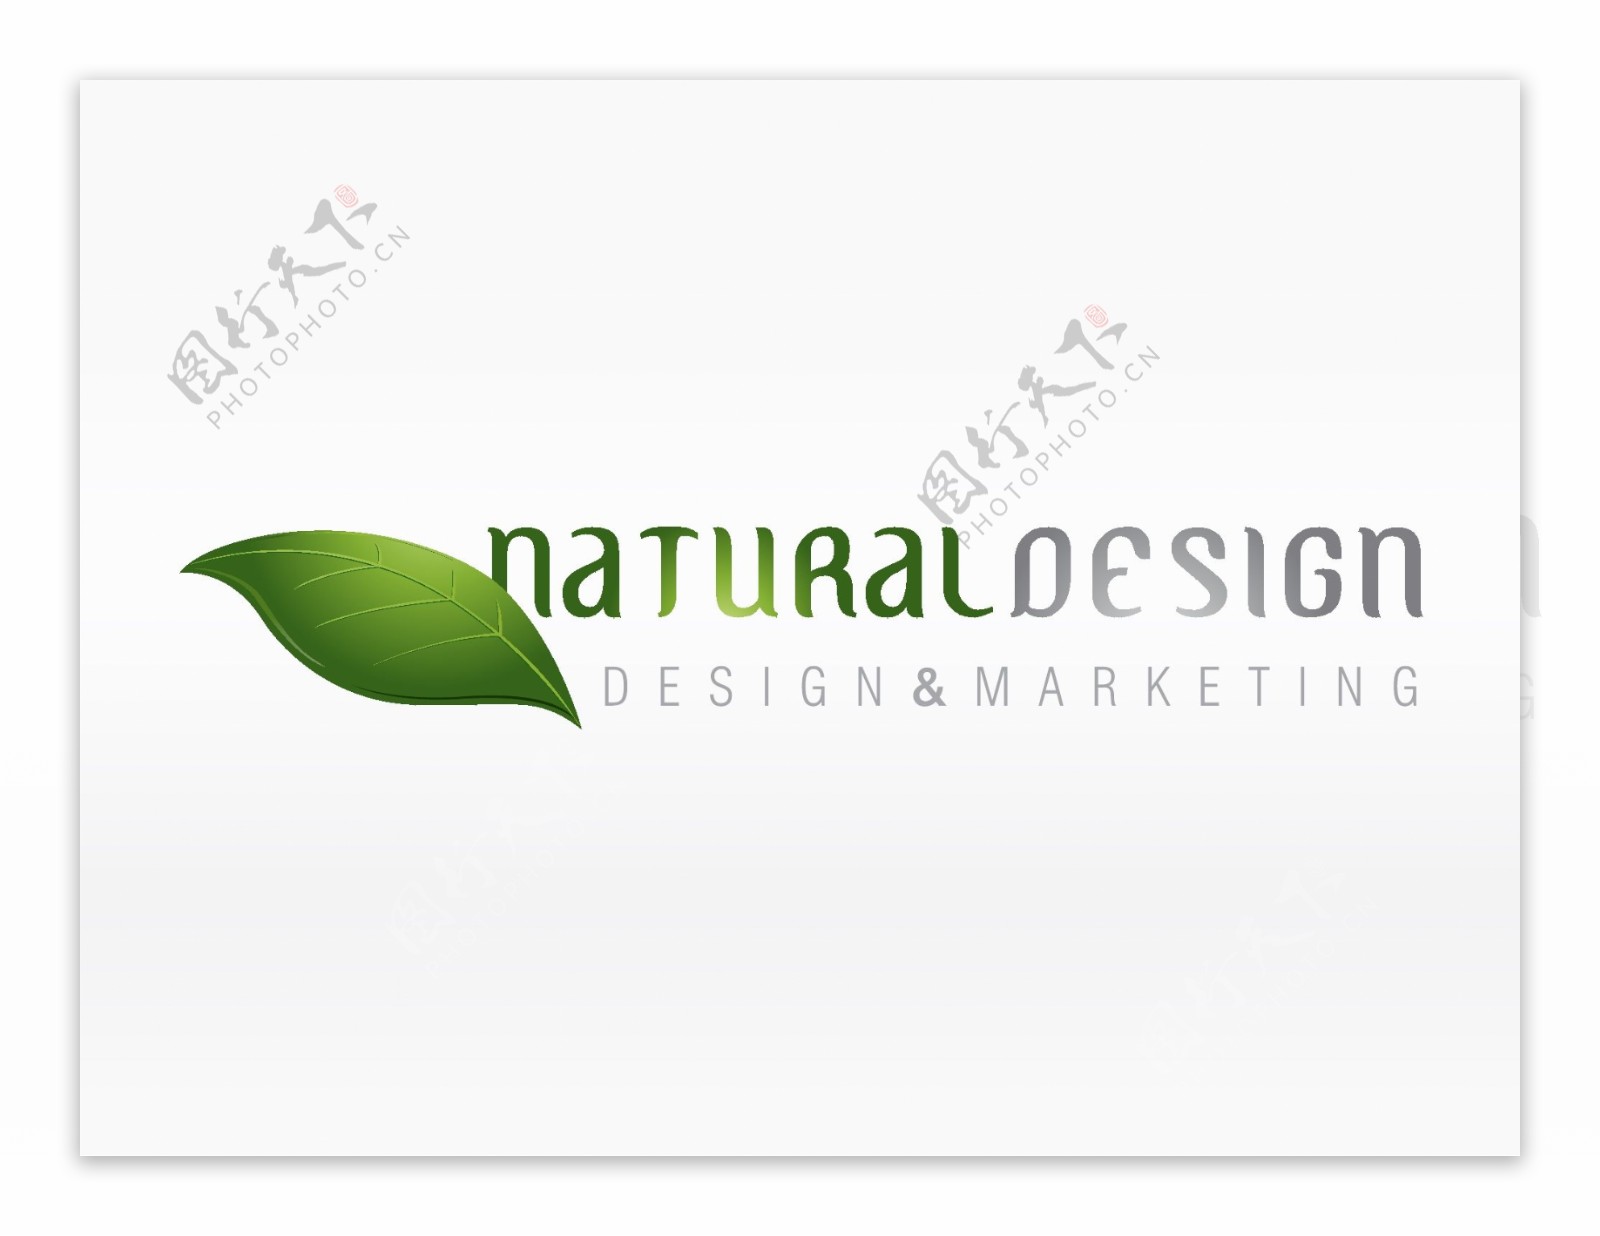 绿色自然环保企业标志设计